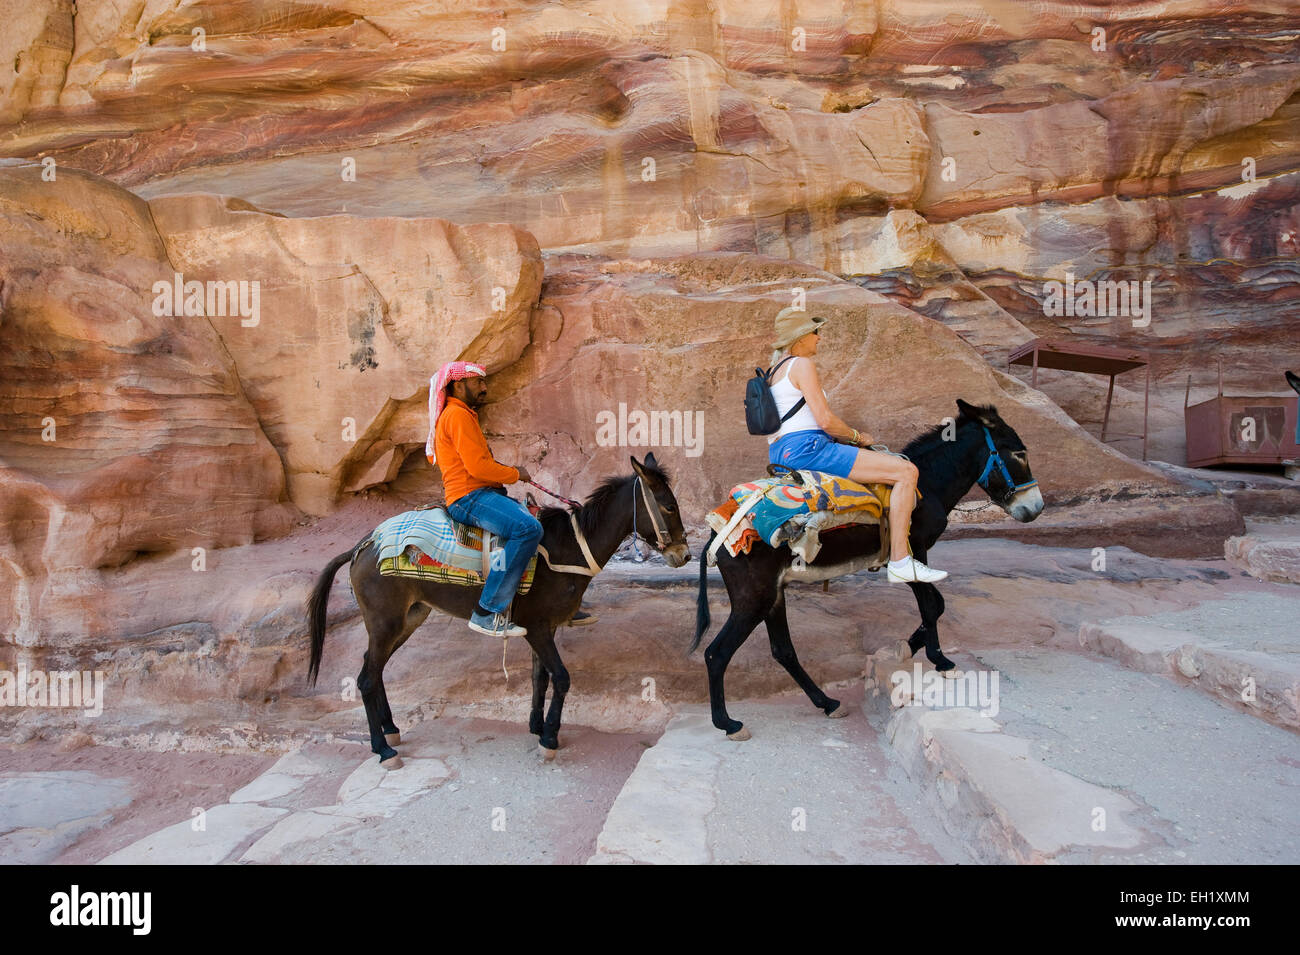 PETRA, Jordanien - 12. Oktober 2014: Zwei Esel mit seinem Besitzer und ein Tourist sind die lange Treppe hinauf zu den 'Ad Deir' Monaste Klettern Stockfoto